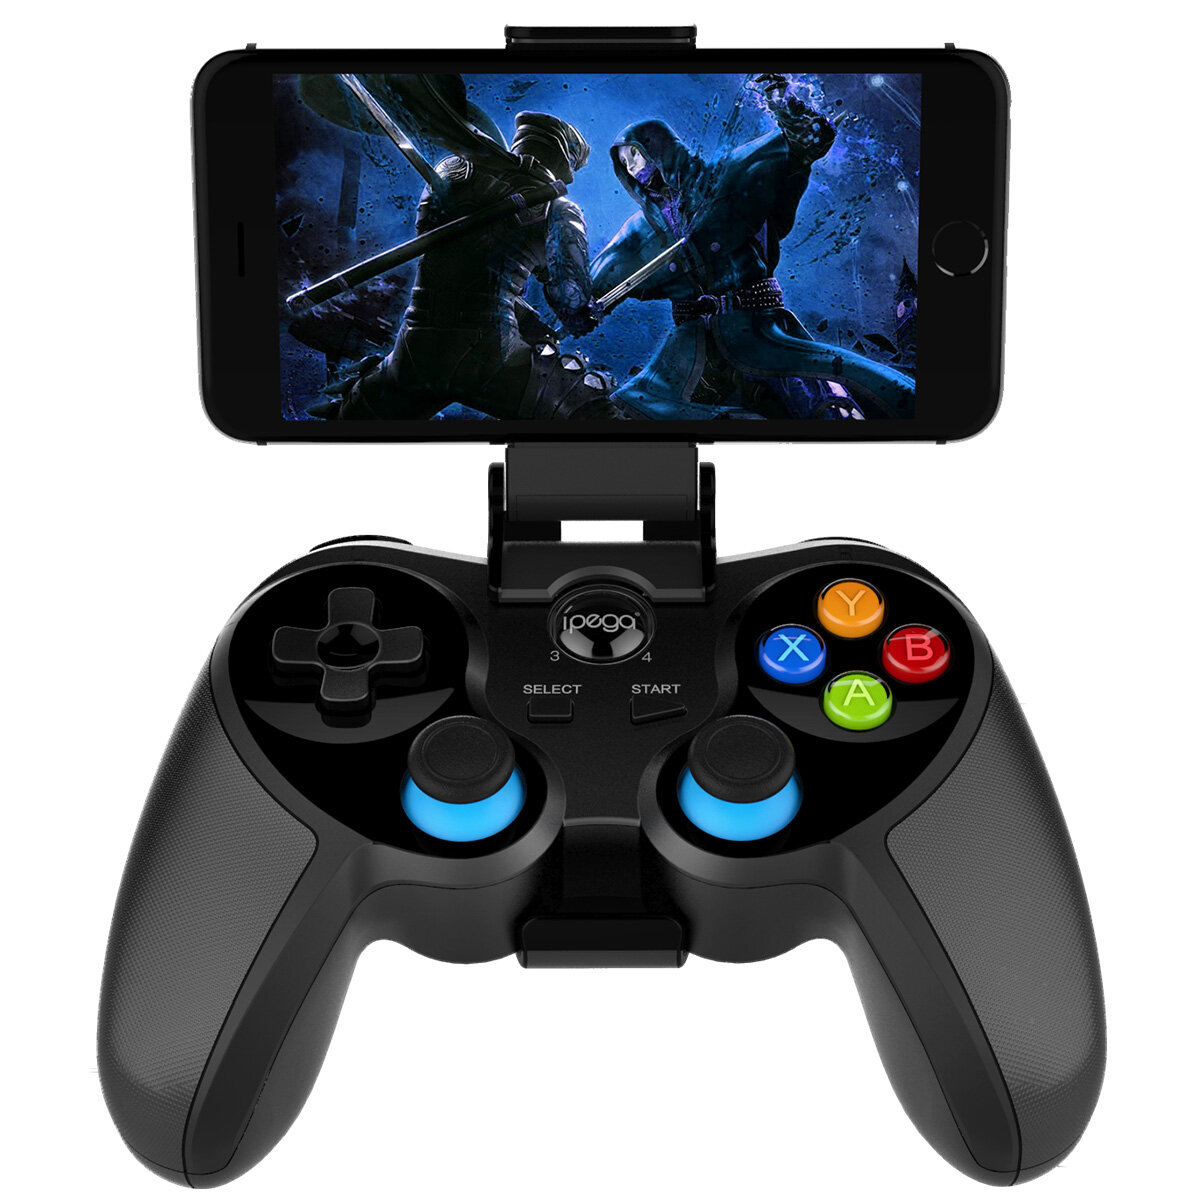 

IPEGA PG-9157 Bluetooth беспроводной игровой контроллер Дистанционный Геймпад Джойстик для устройств iOS Android